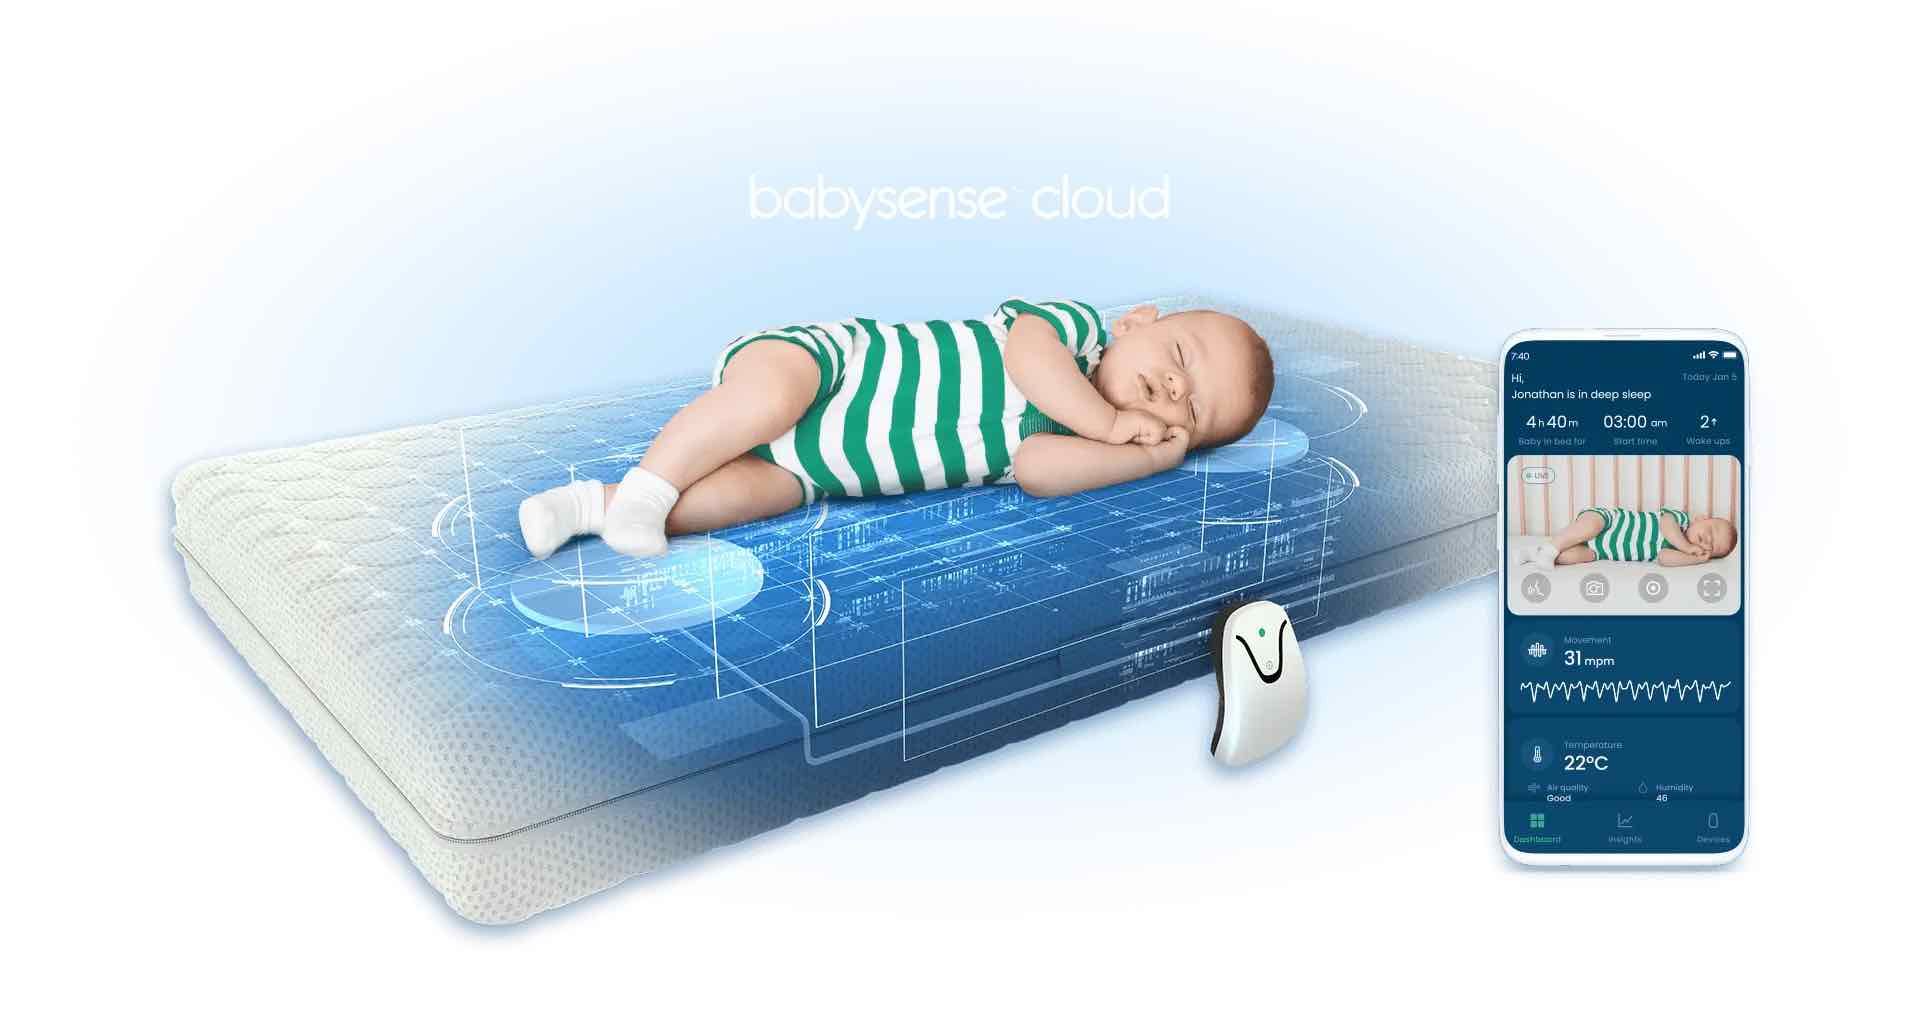 babysense cloud